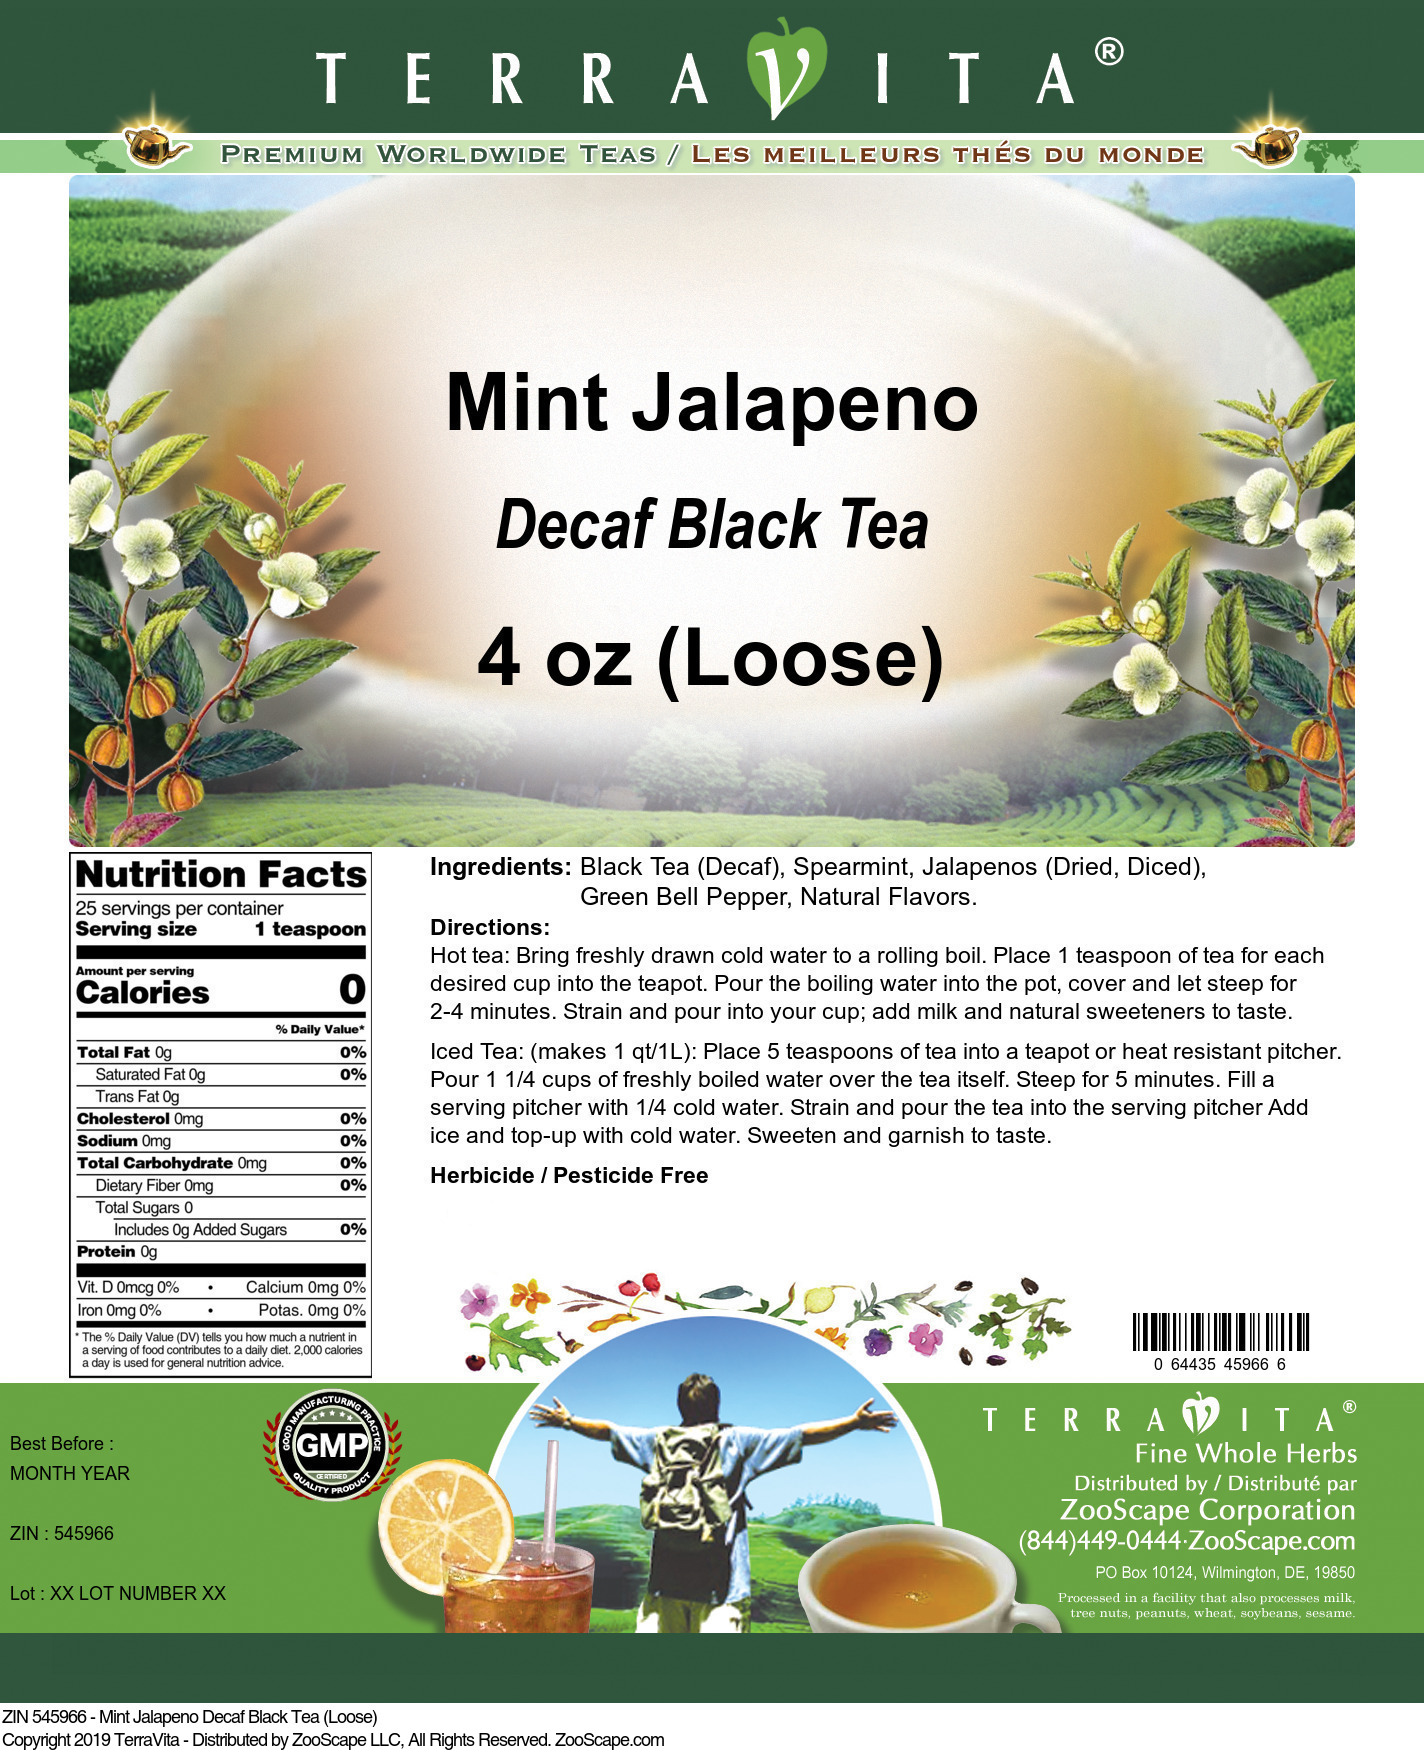 Mint Jalapeno Decaf Black Tea (Loose) - Label